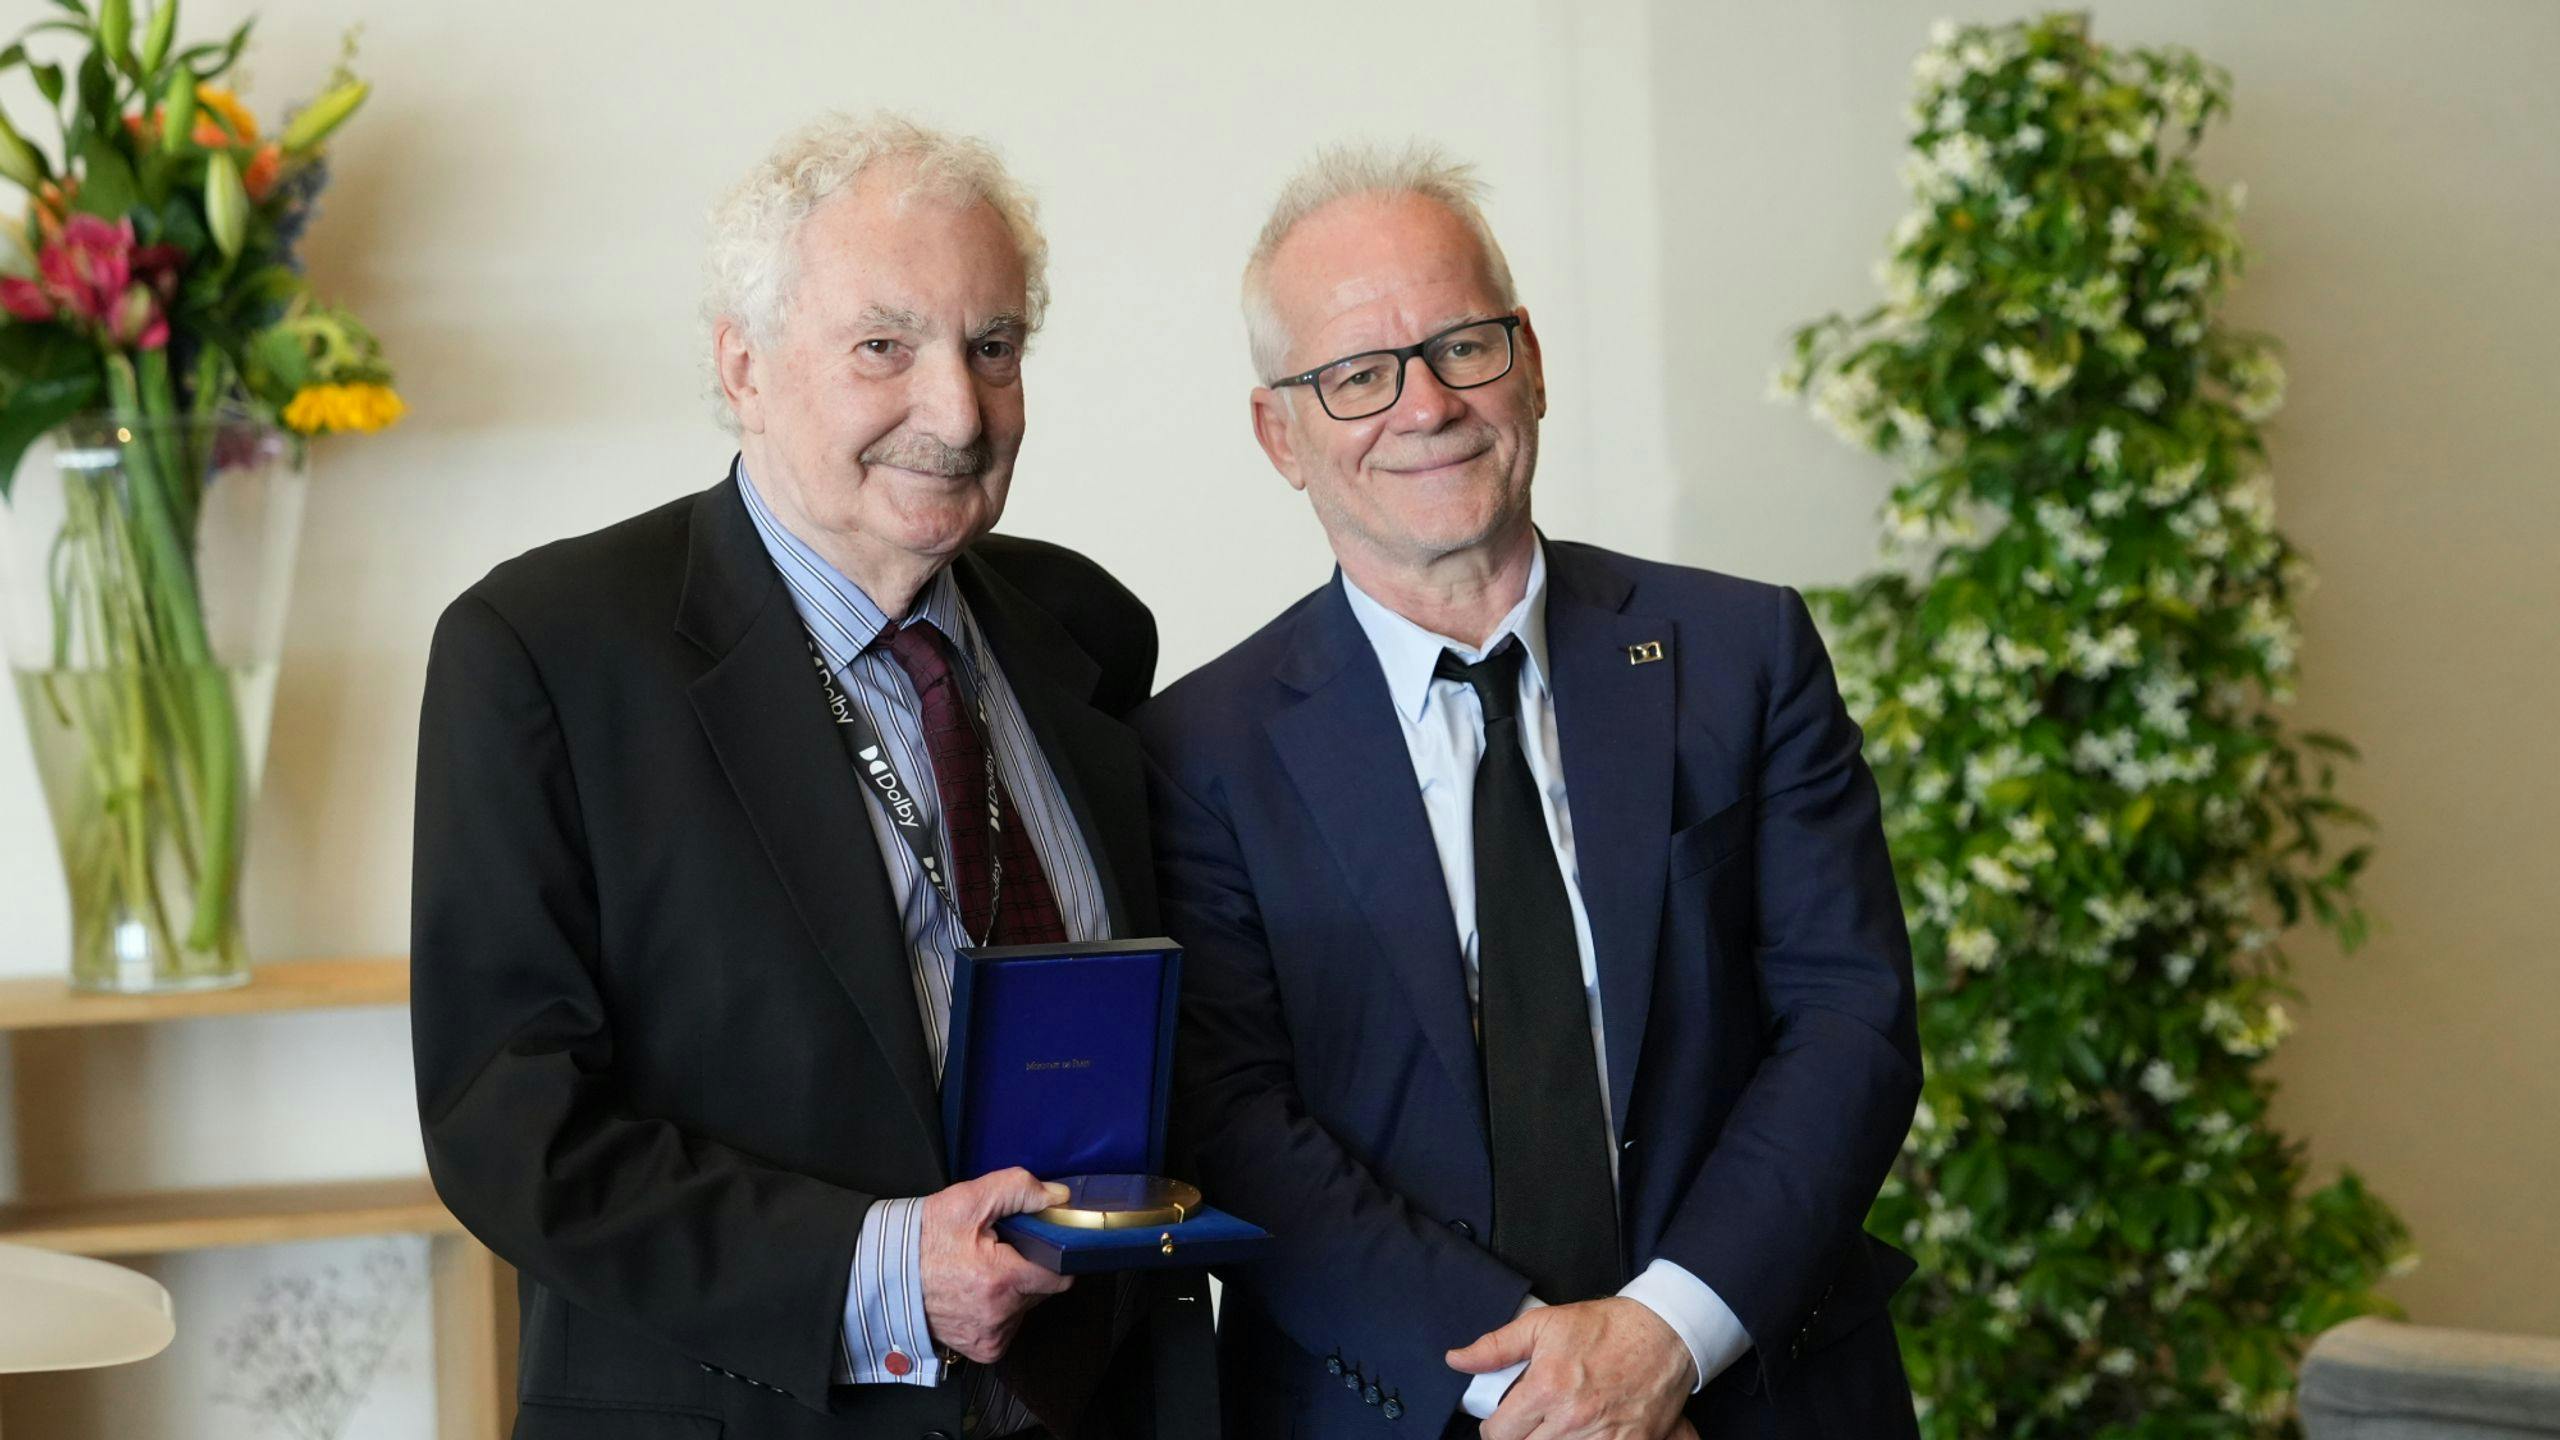 Ioan Allen, vicepresidente senior de Dolby, posa junto a Thierry Frémau tras recibir la medalla del Festival de Cannes